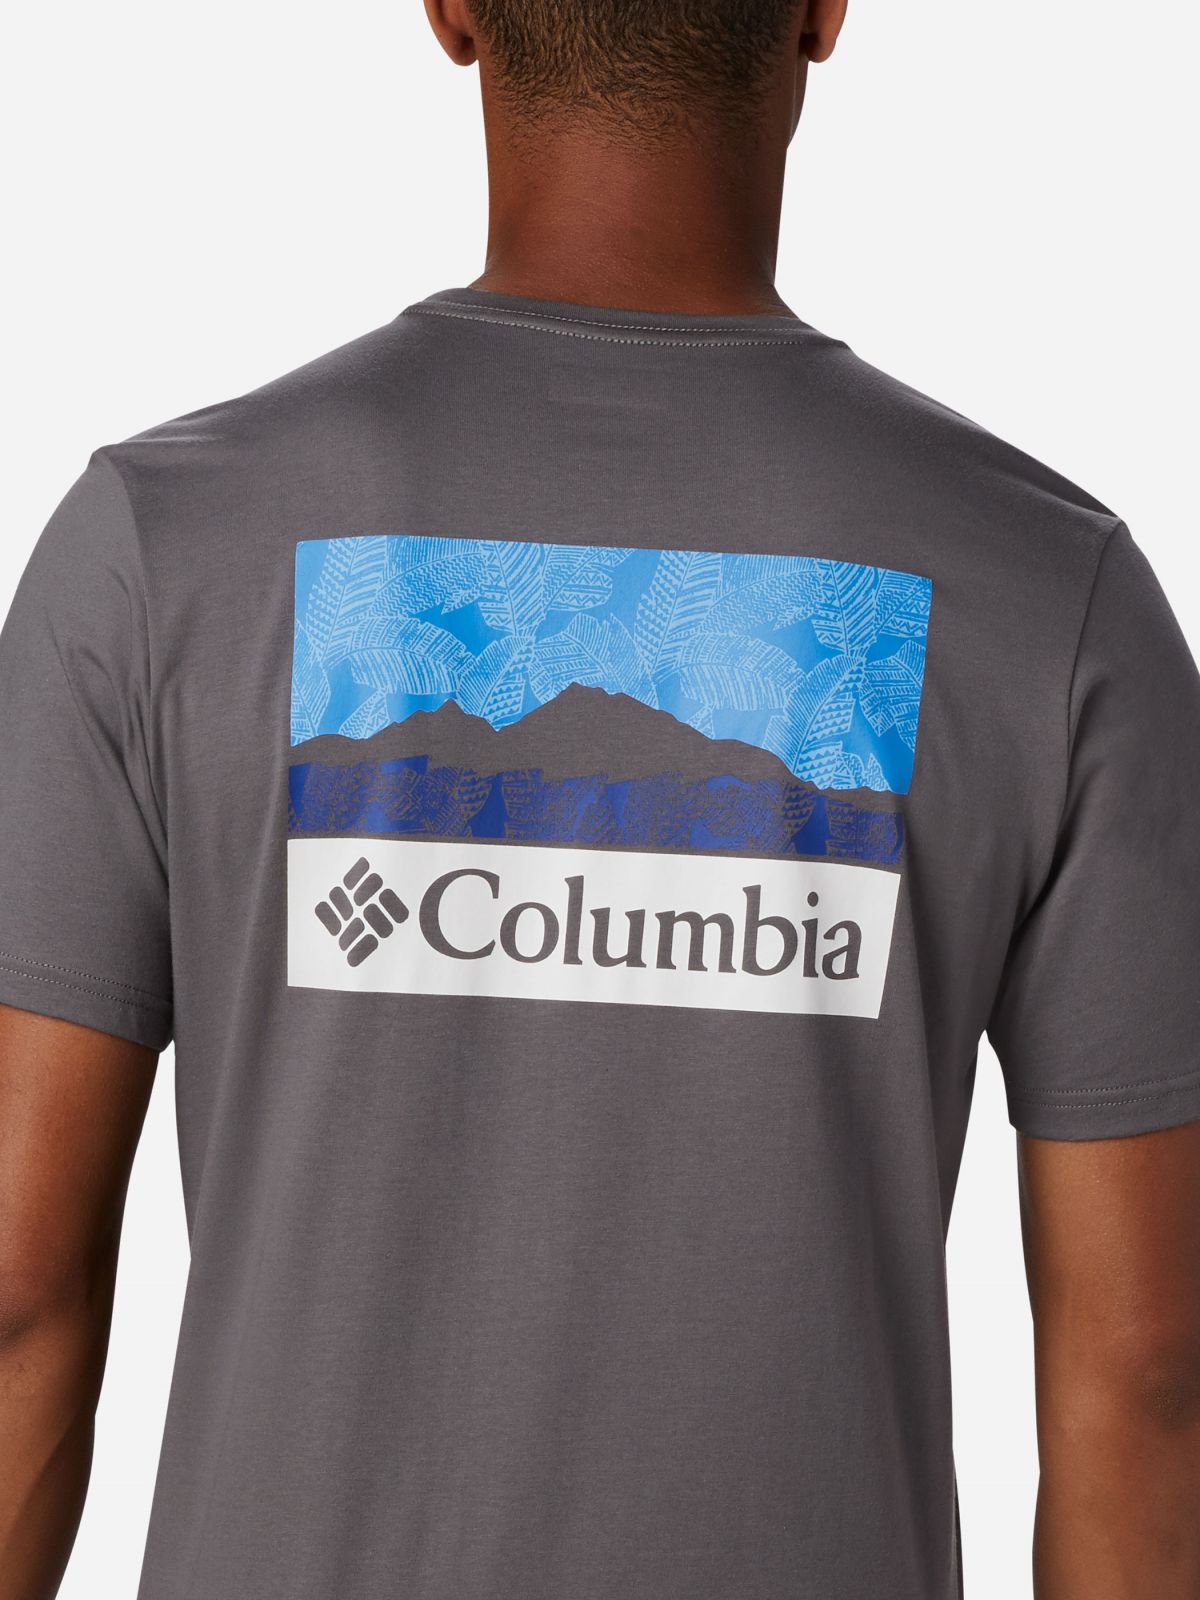  טי שירט עם הדפס לוגו של COLUMBIA